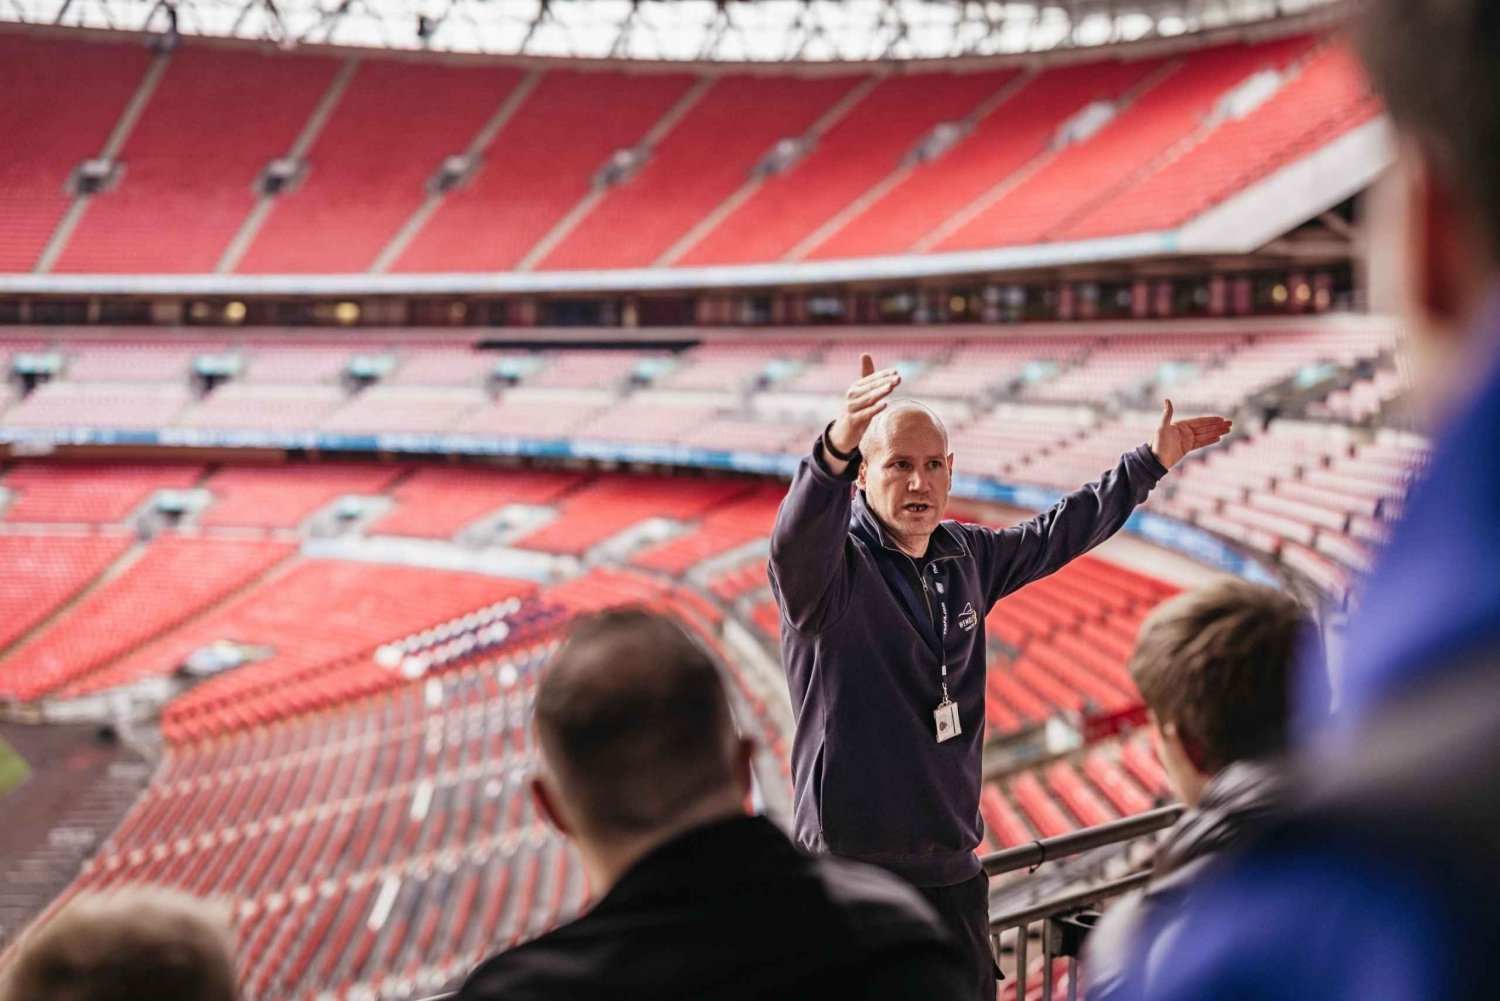 London: Erkunde das Wembley-Stadion auf einer geführten Tour